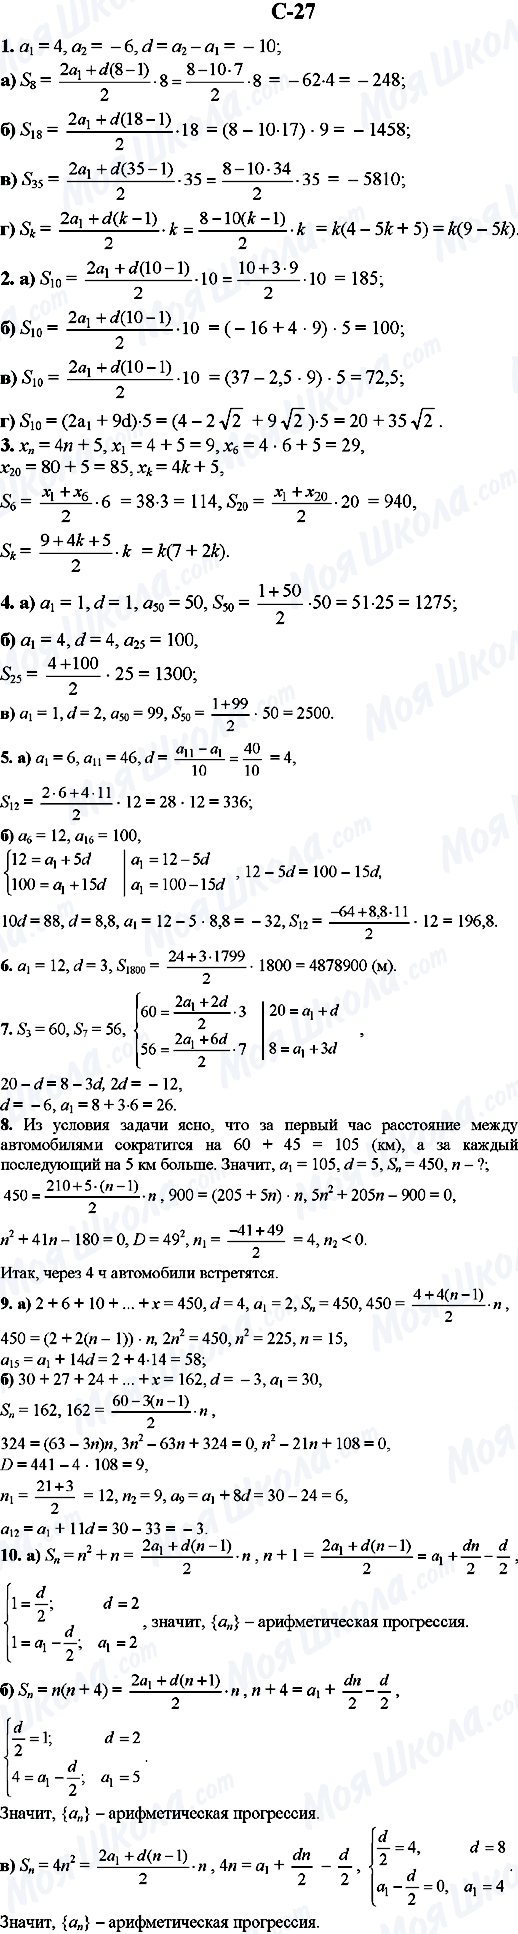 ГДЗ Алгебра 9 класс страница C-27